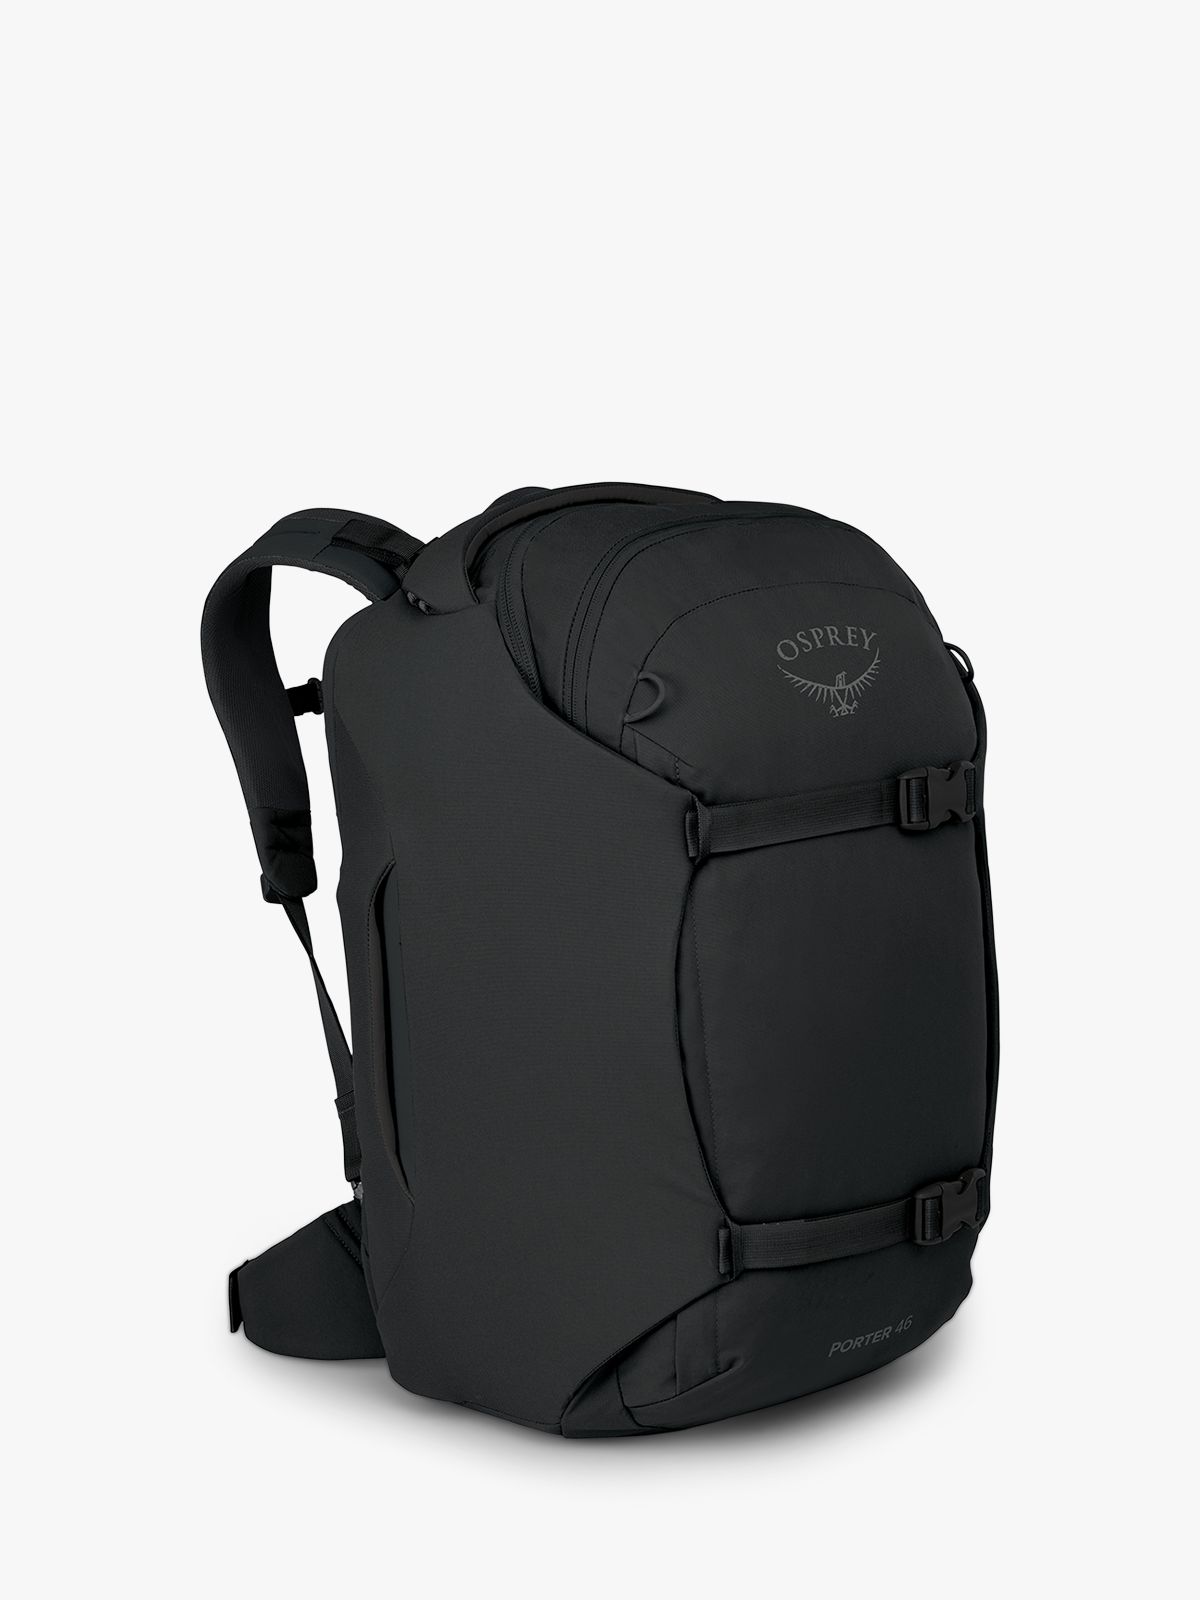 Osprey Porter 46 Travel Backpack Black for sale online